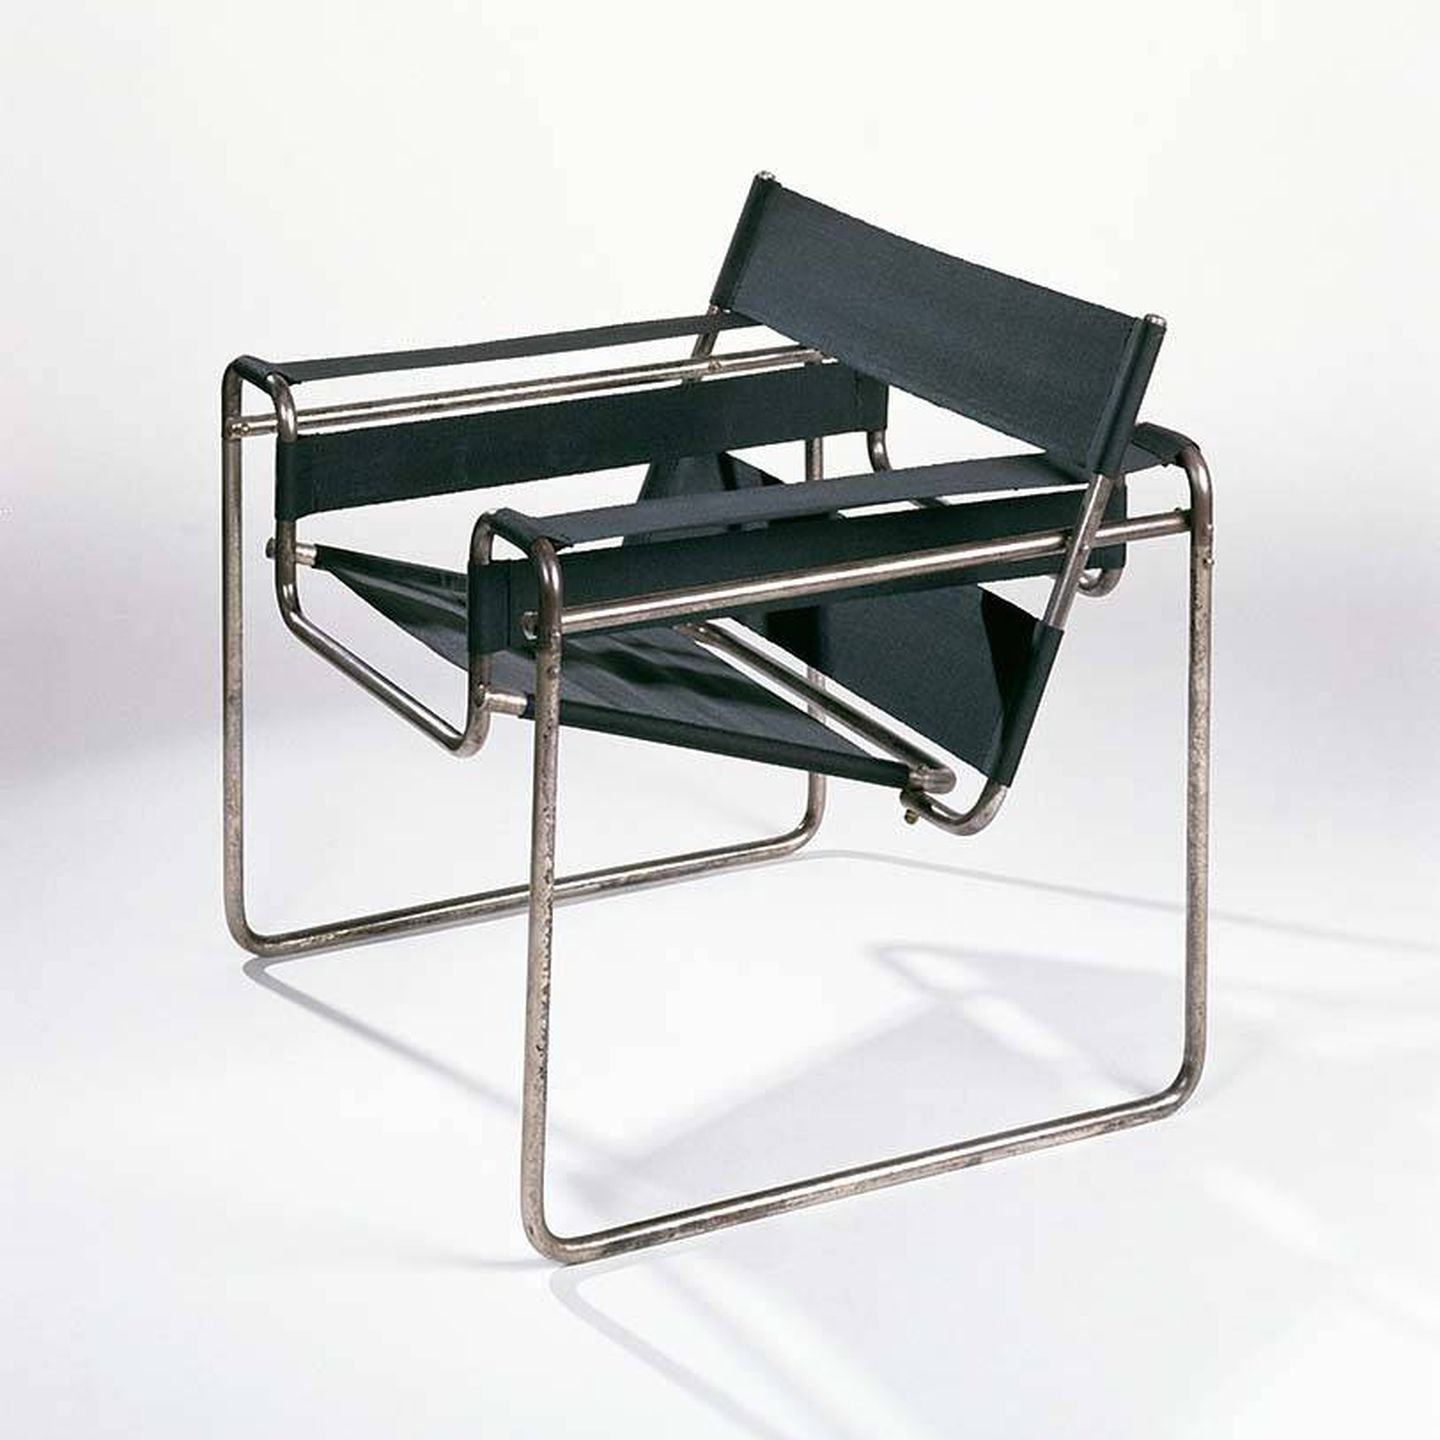 La silla Wassily, también conocida como Modelo B3, fue diseñada por Marcel Breuer y Marcel Bouvier entre 1925-26 en el taller de la Bauhaus. (Cortesía)